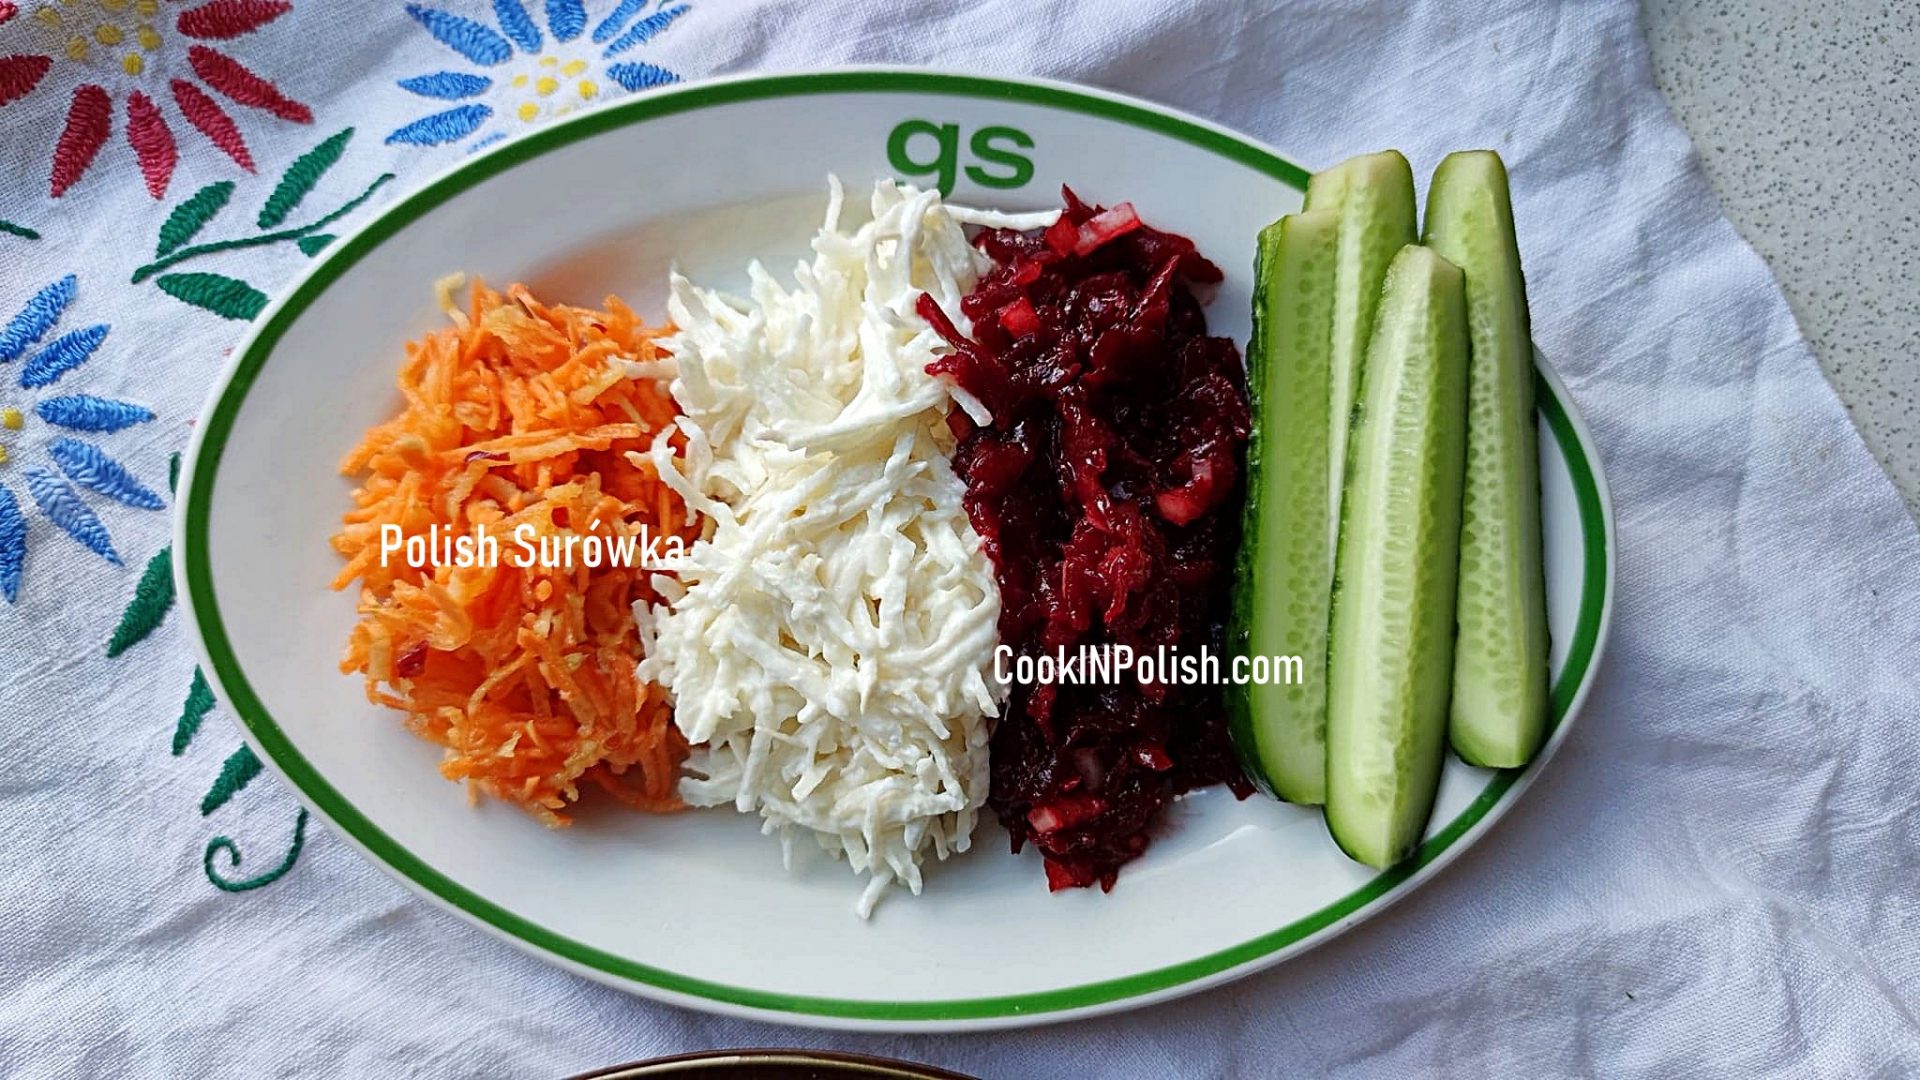 Surówka- Polish Salad